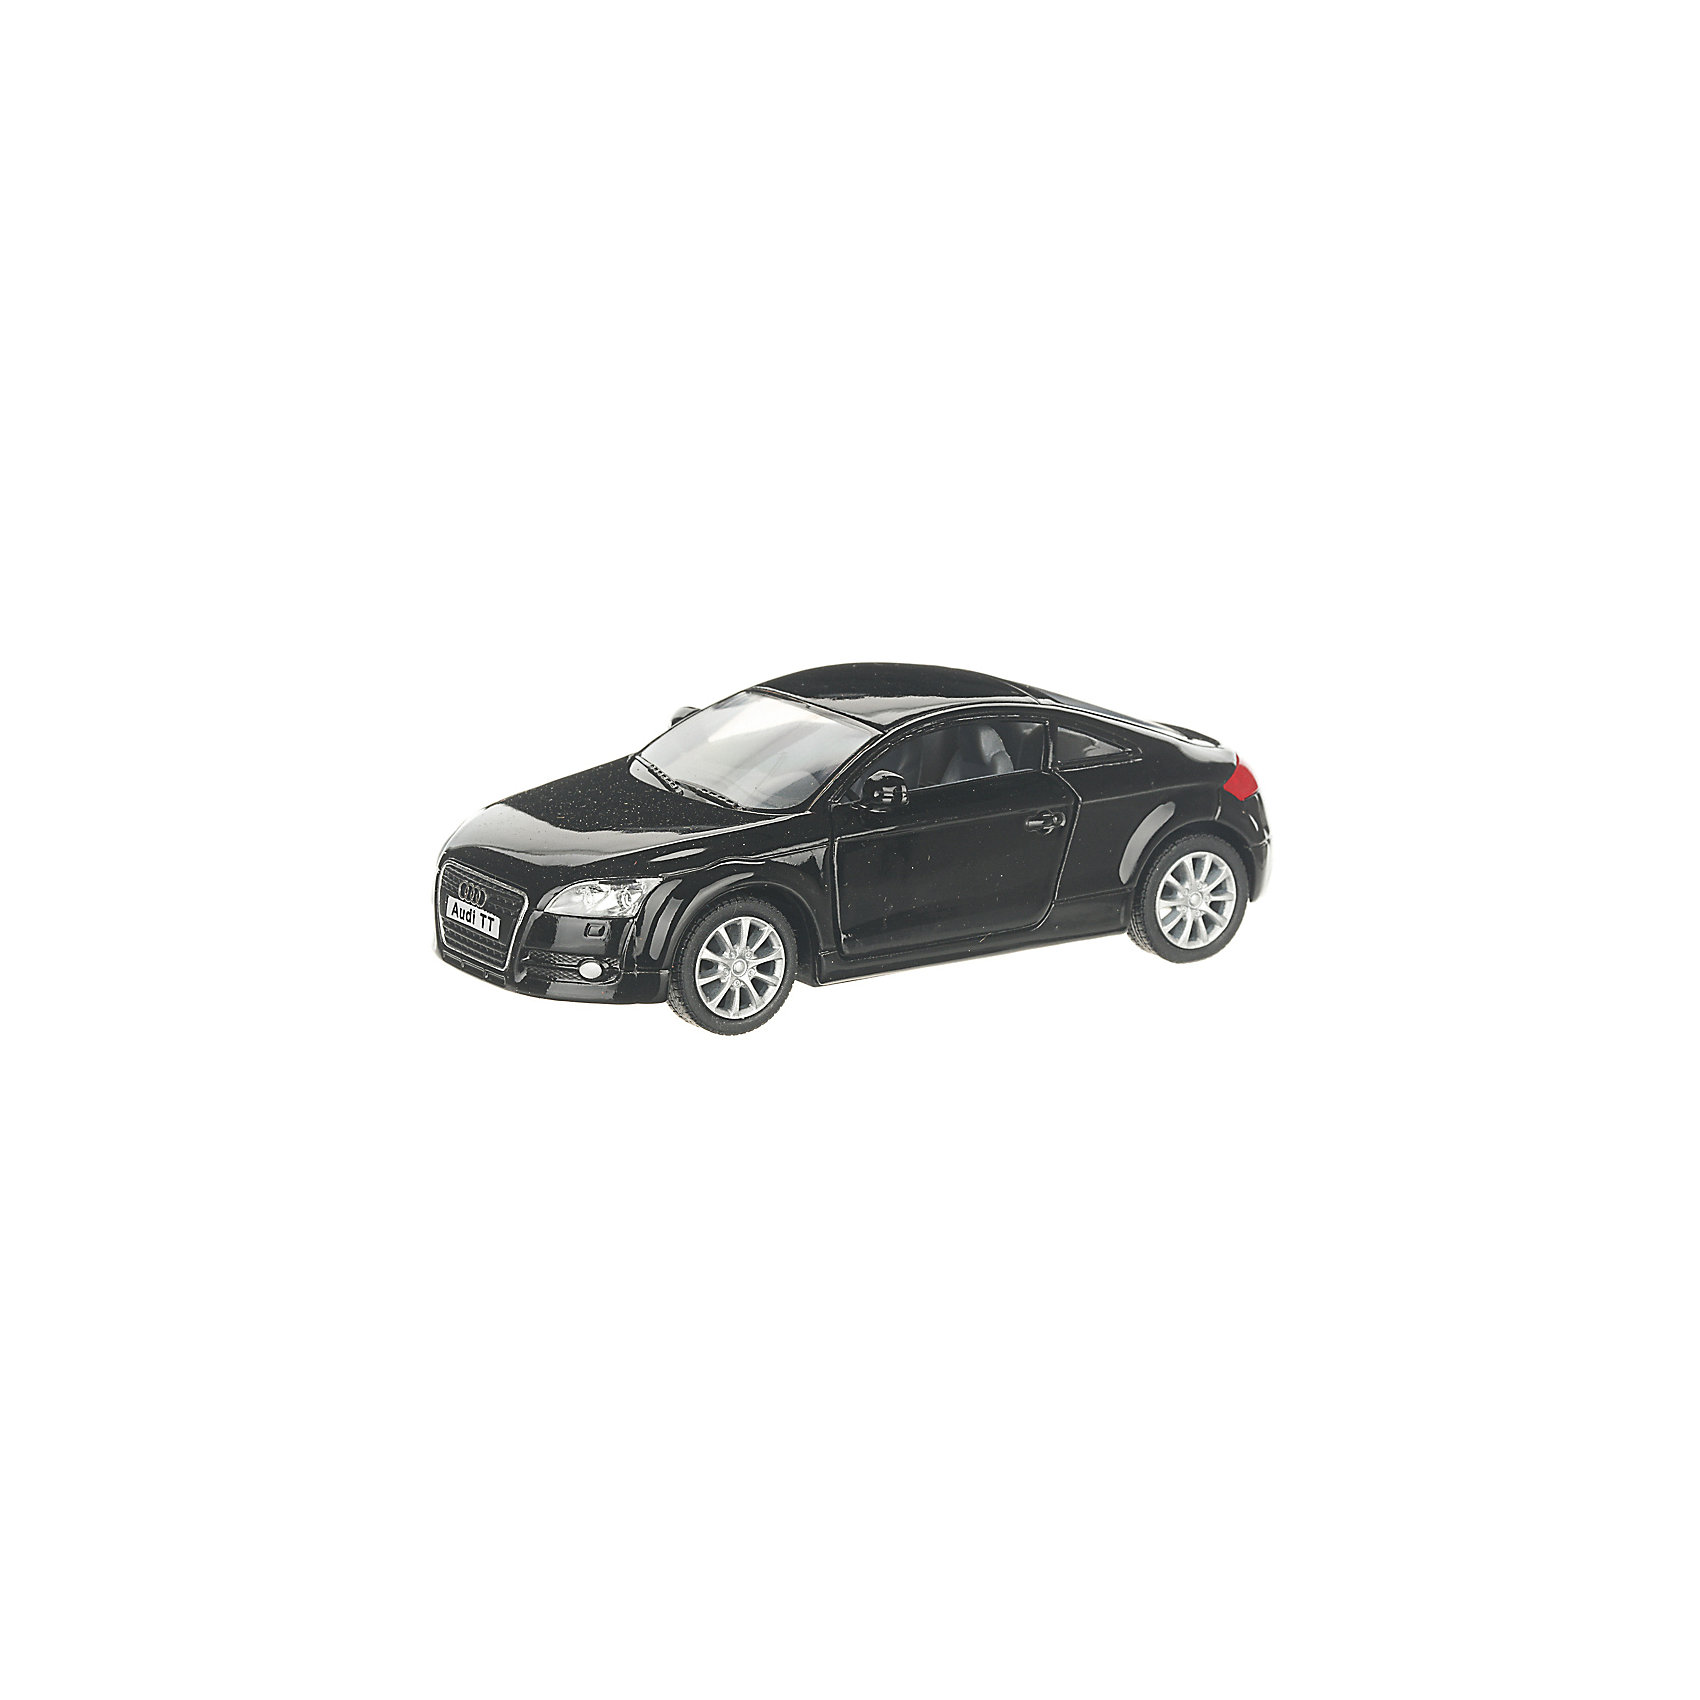 Коллекционная машинка Audi ТТ 2008, чёрная Serinity Toys 13233177